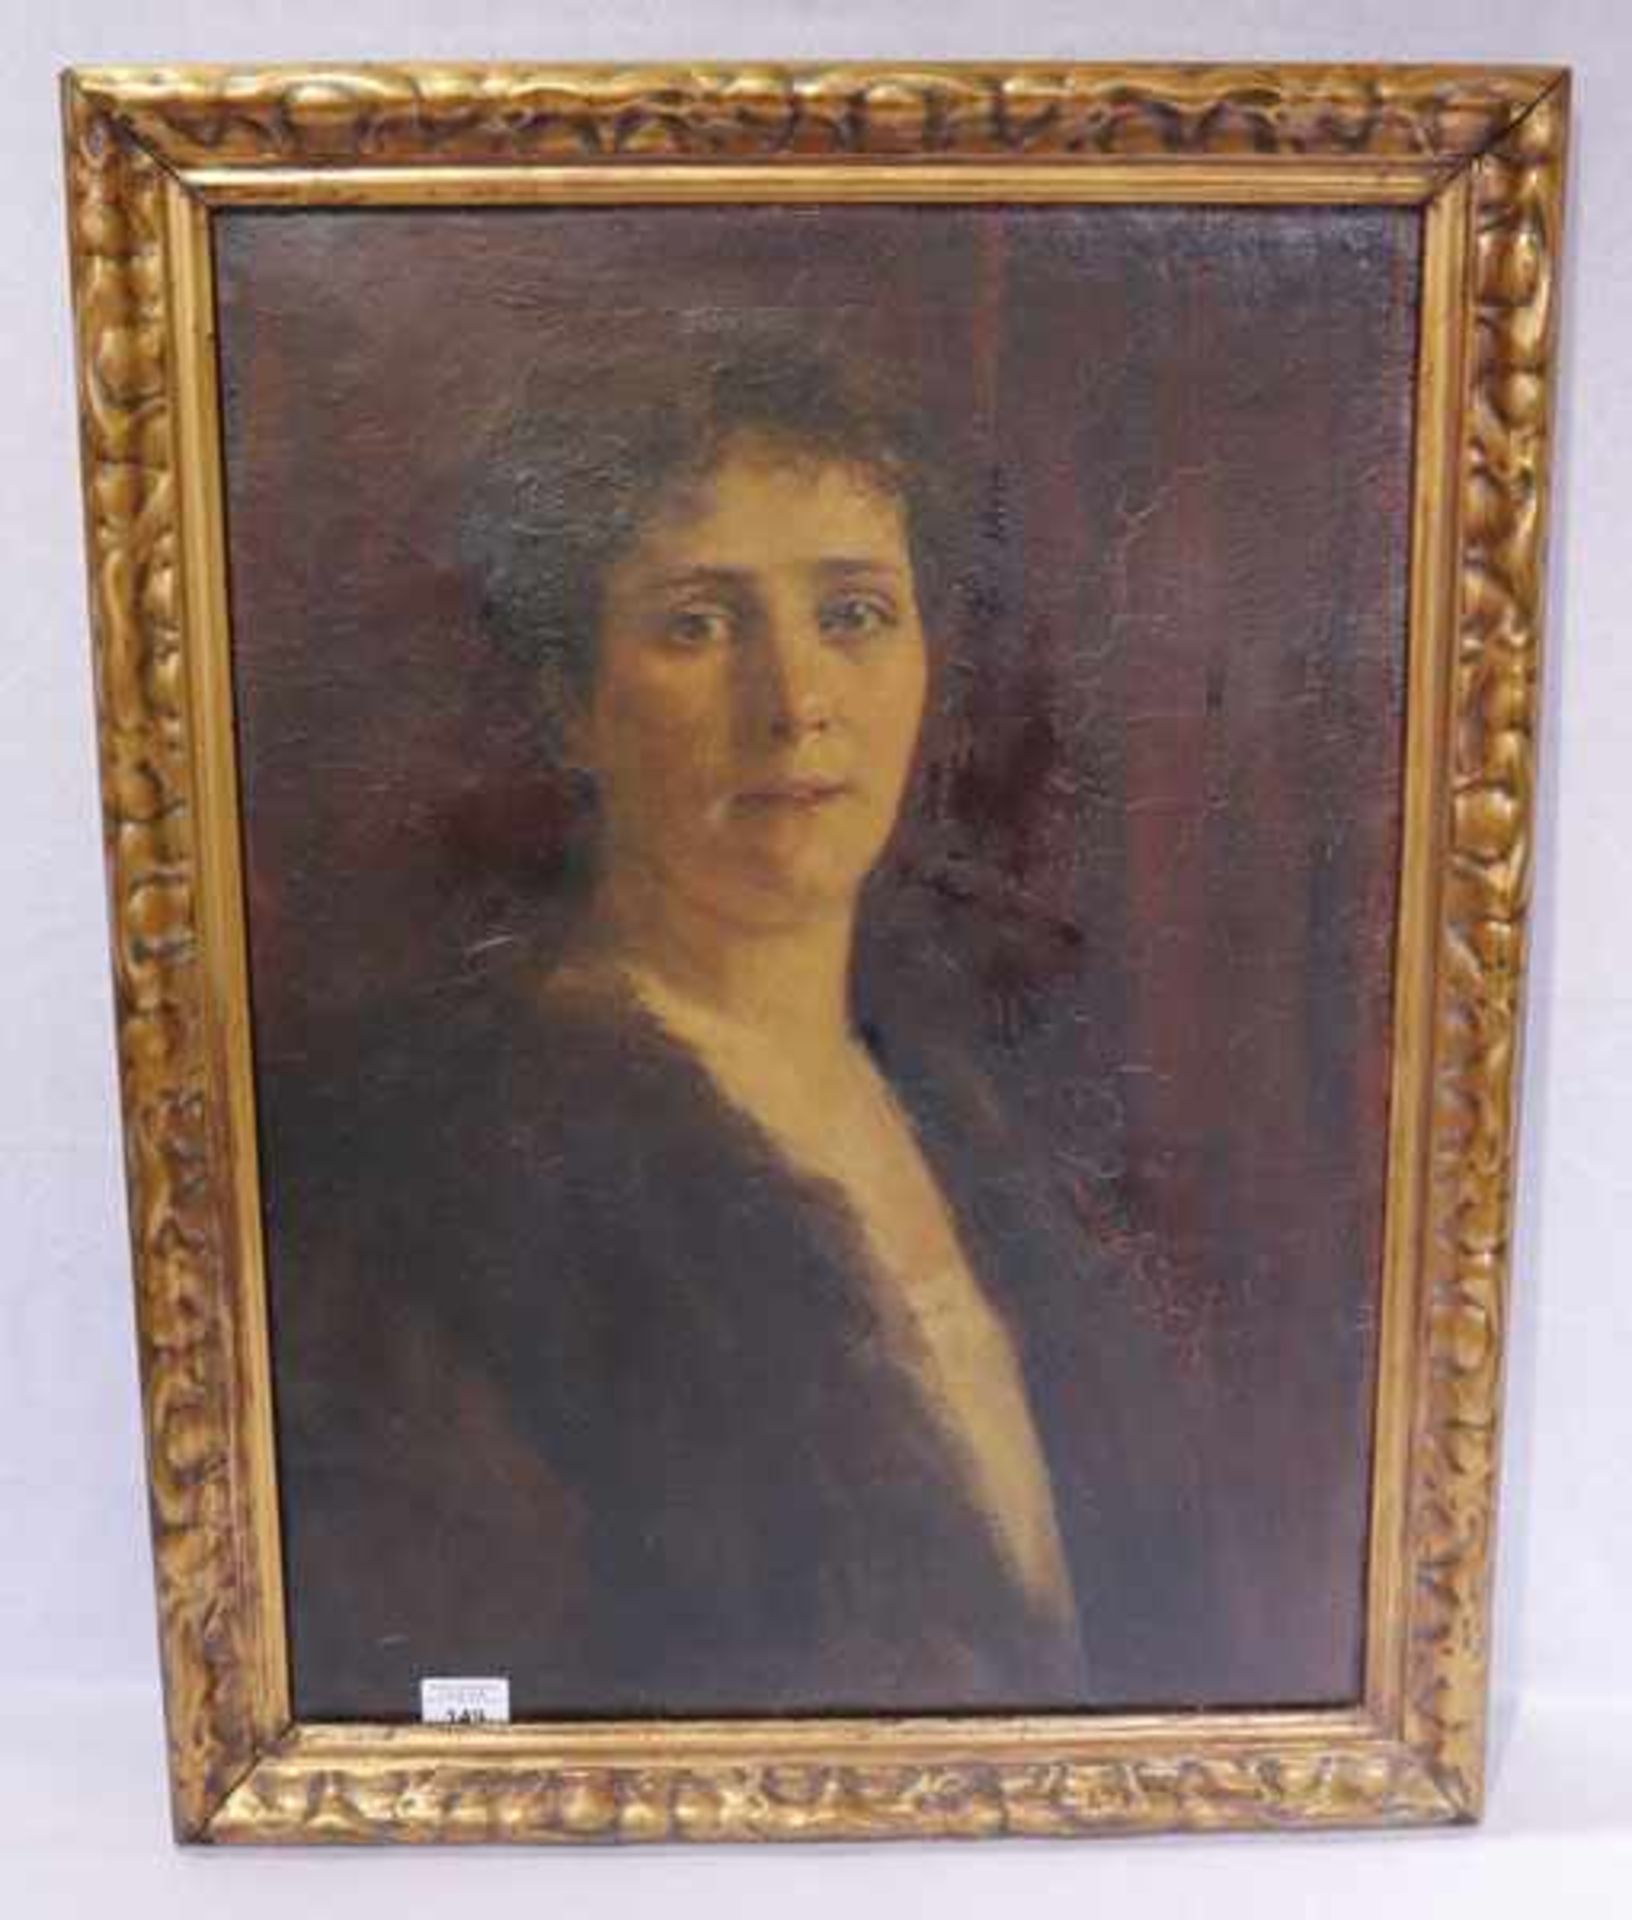 Gemälde ÖL/LW 'Portrait von Sylvia von Salvini Plawen', oben rechts signiert Adele Fairholme, * 1861